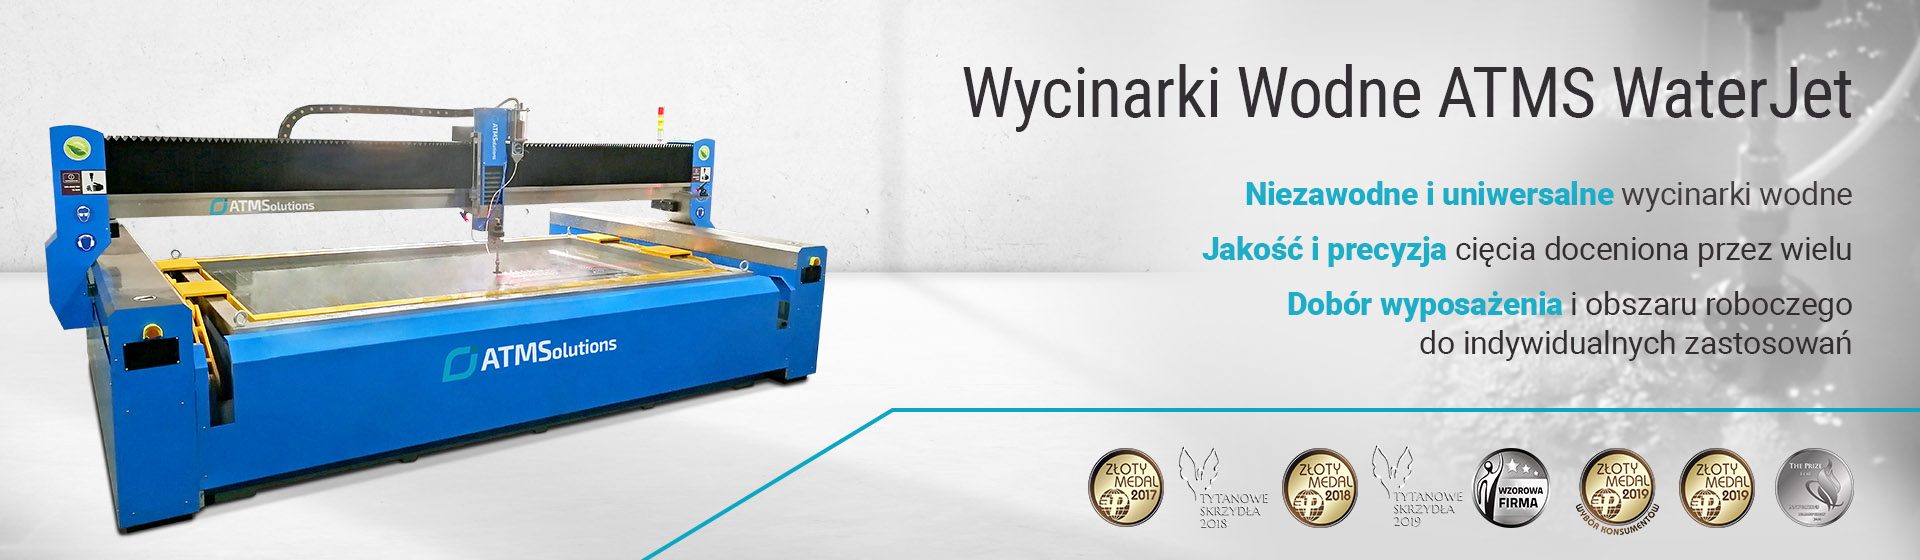 Wycinarki Wodne ATMS WaterJet